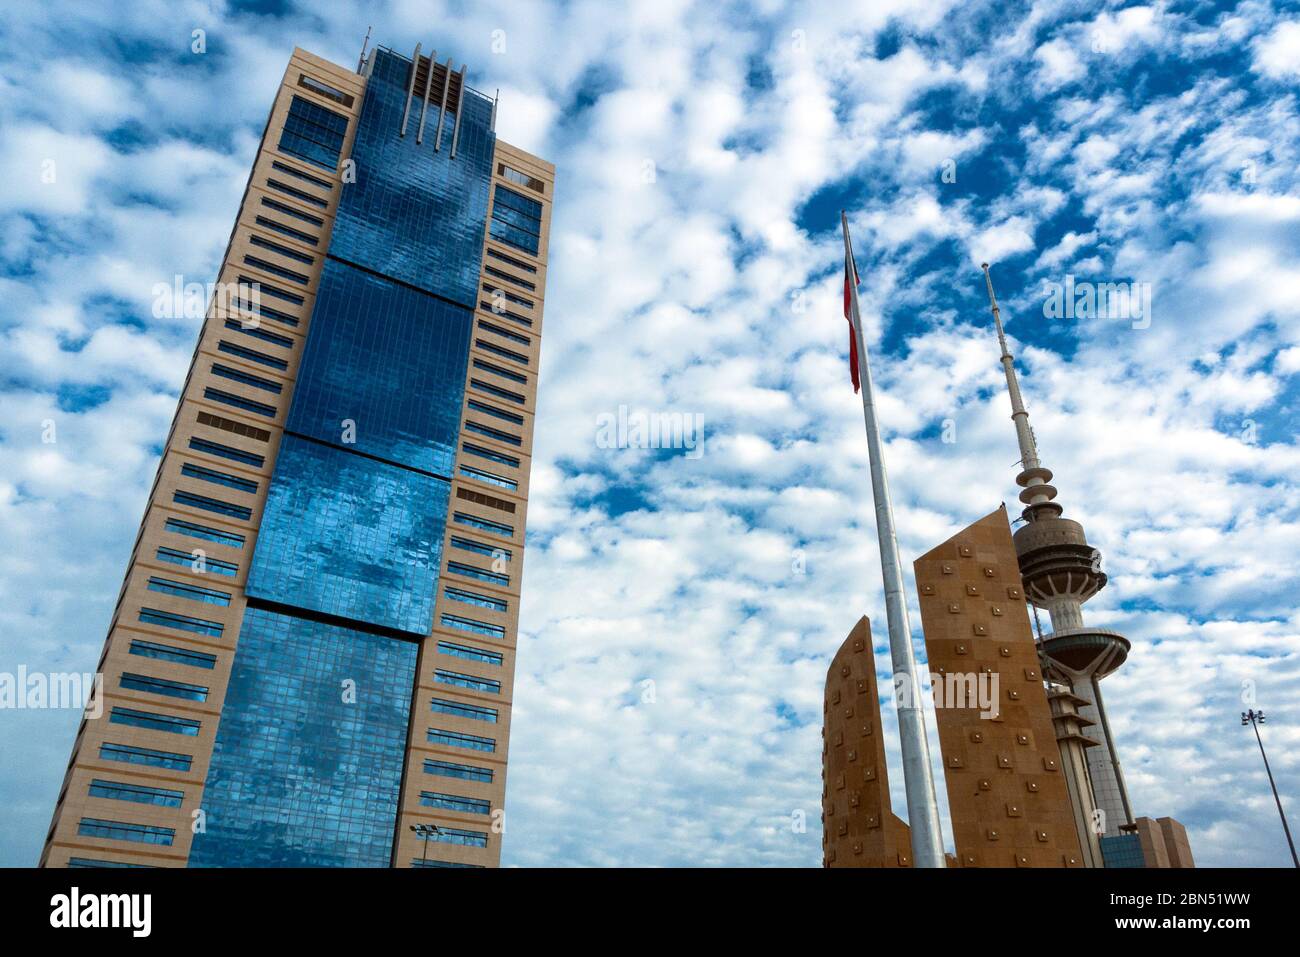 Kuwait città, Kuwait: Un grattacielo e la torre del ministero delle comunicazioni nel centro della città di Kuwait Foto Stock